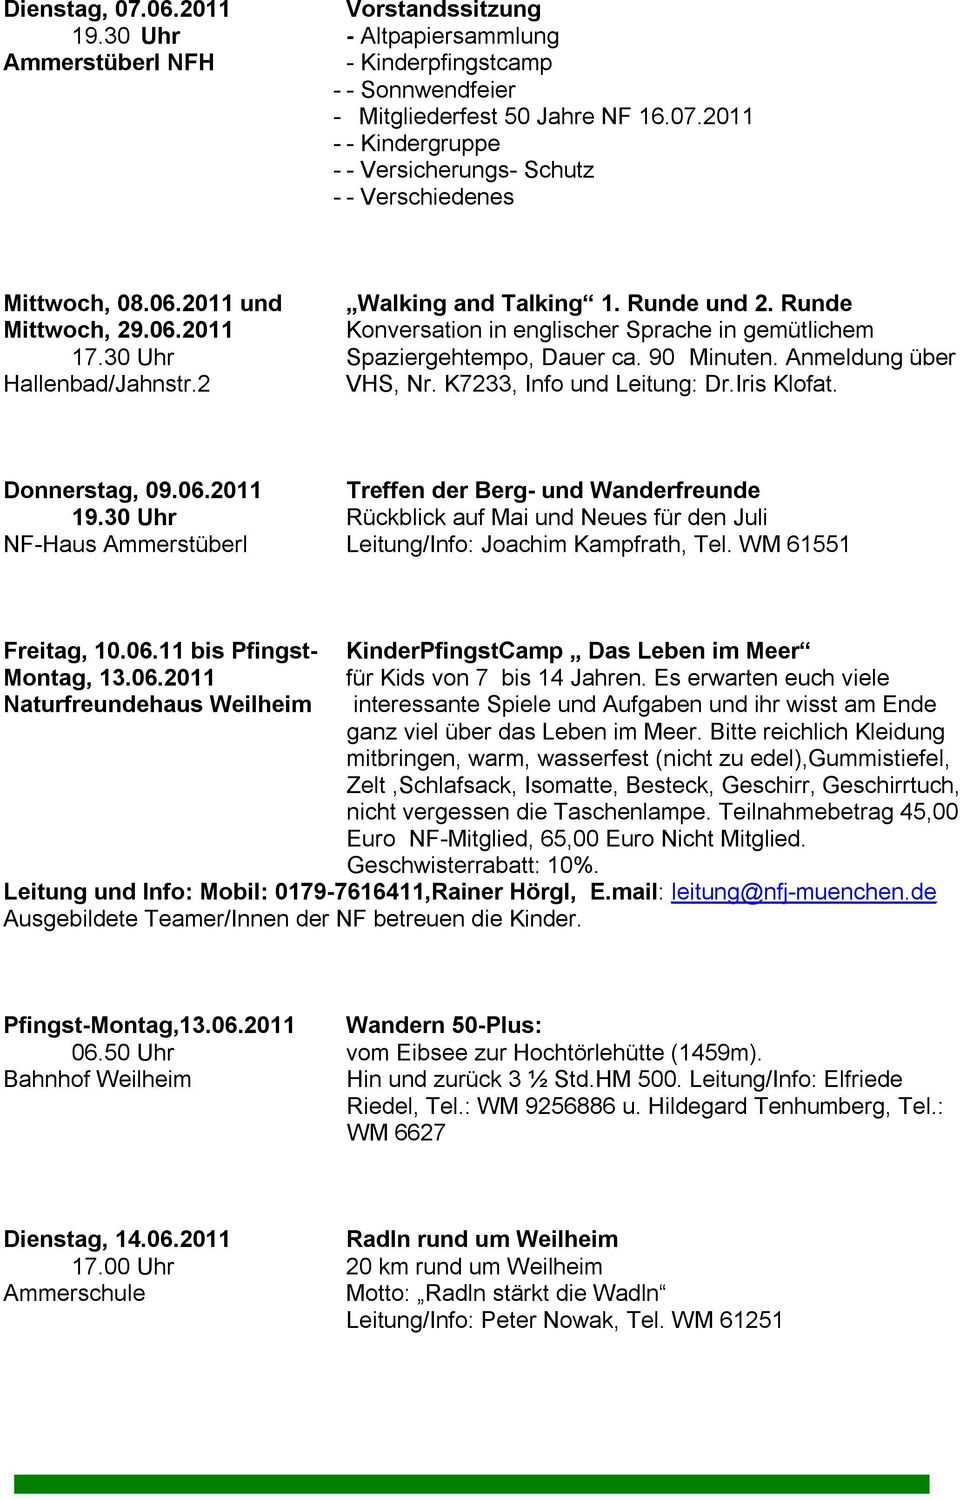 Anmeldung über Hallenbad/Jahnstr.2 VHS, Nr. K7233, Info und Leitung: Dr.Iris Klofat. Donnerstag, 09.06.2011 Treffen der Berg- und Wanderfreunde 19.